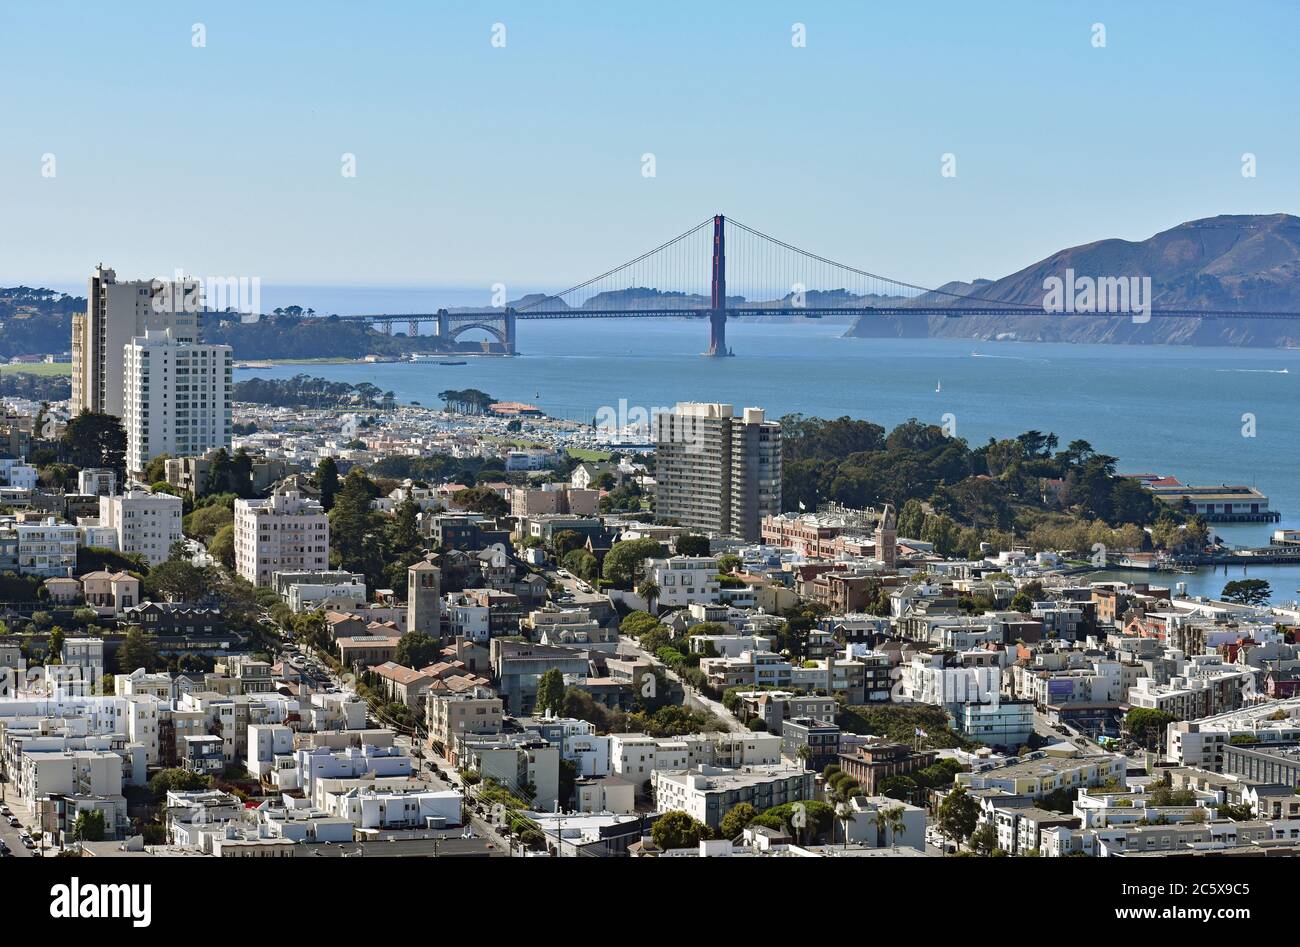 El puente Golden Gate y Marin Headlands desde lo alto de la torre Coit en Telegraph Hill. Calles y colinas de San Francisco en primer plano. Foto de stock